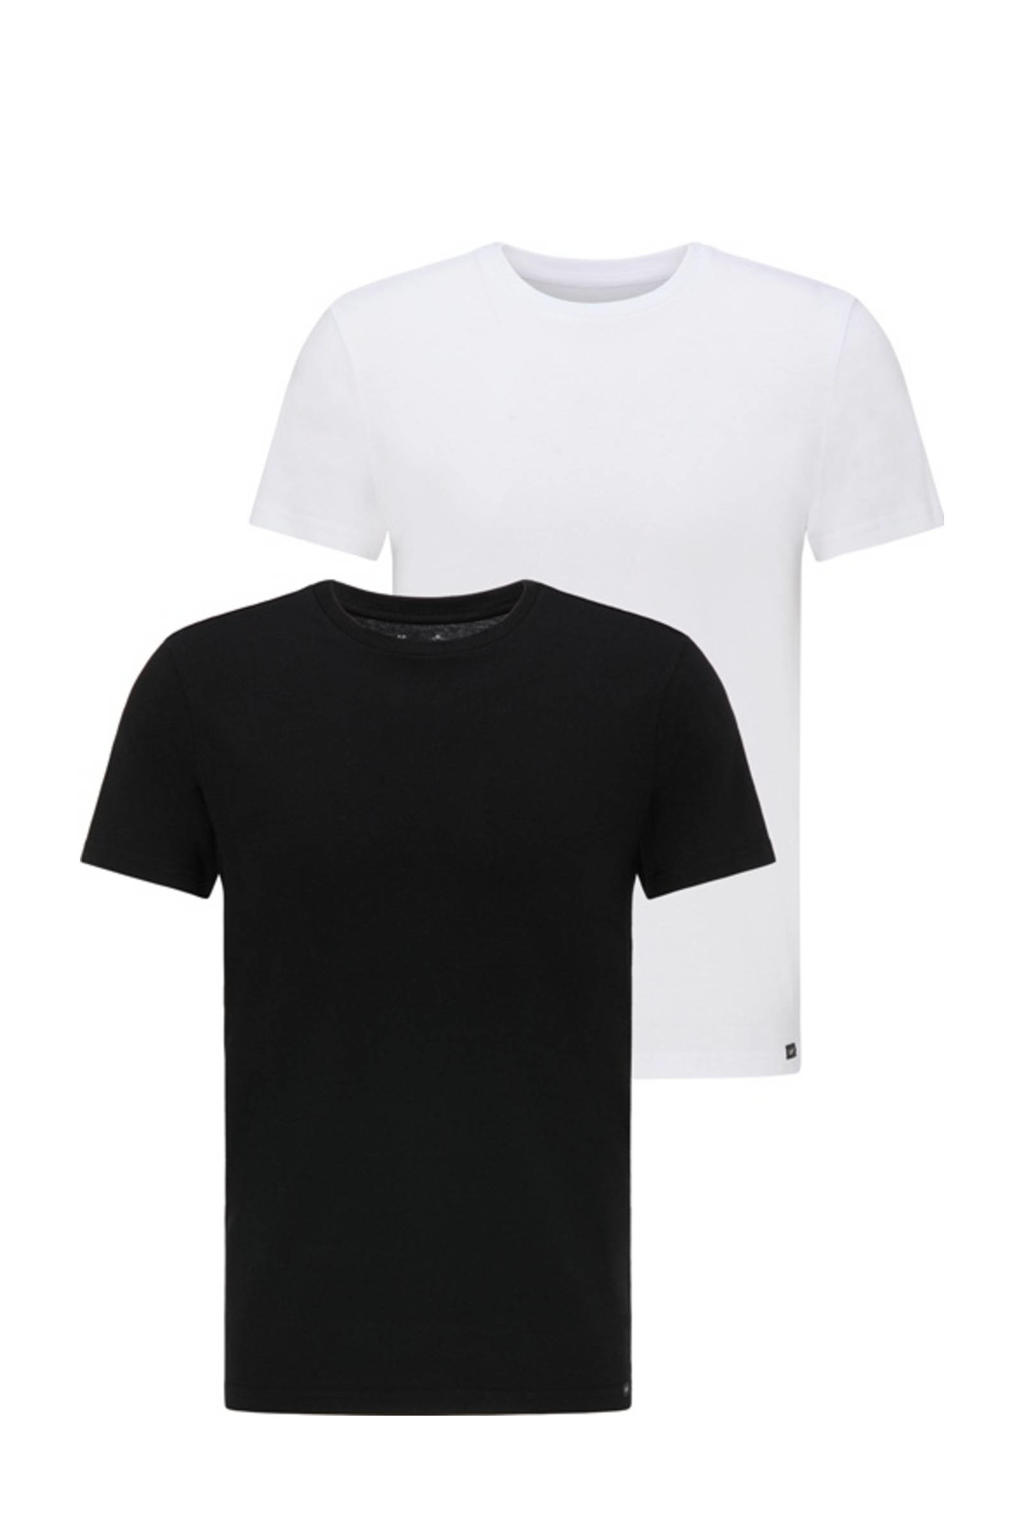 Set van 2 zwart en witte heren Lee T-shirt van biologisch katoen met korte mouwen en ronde hals